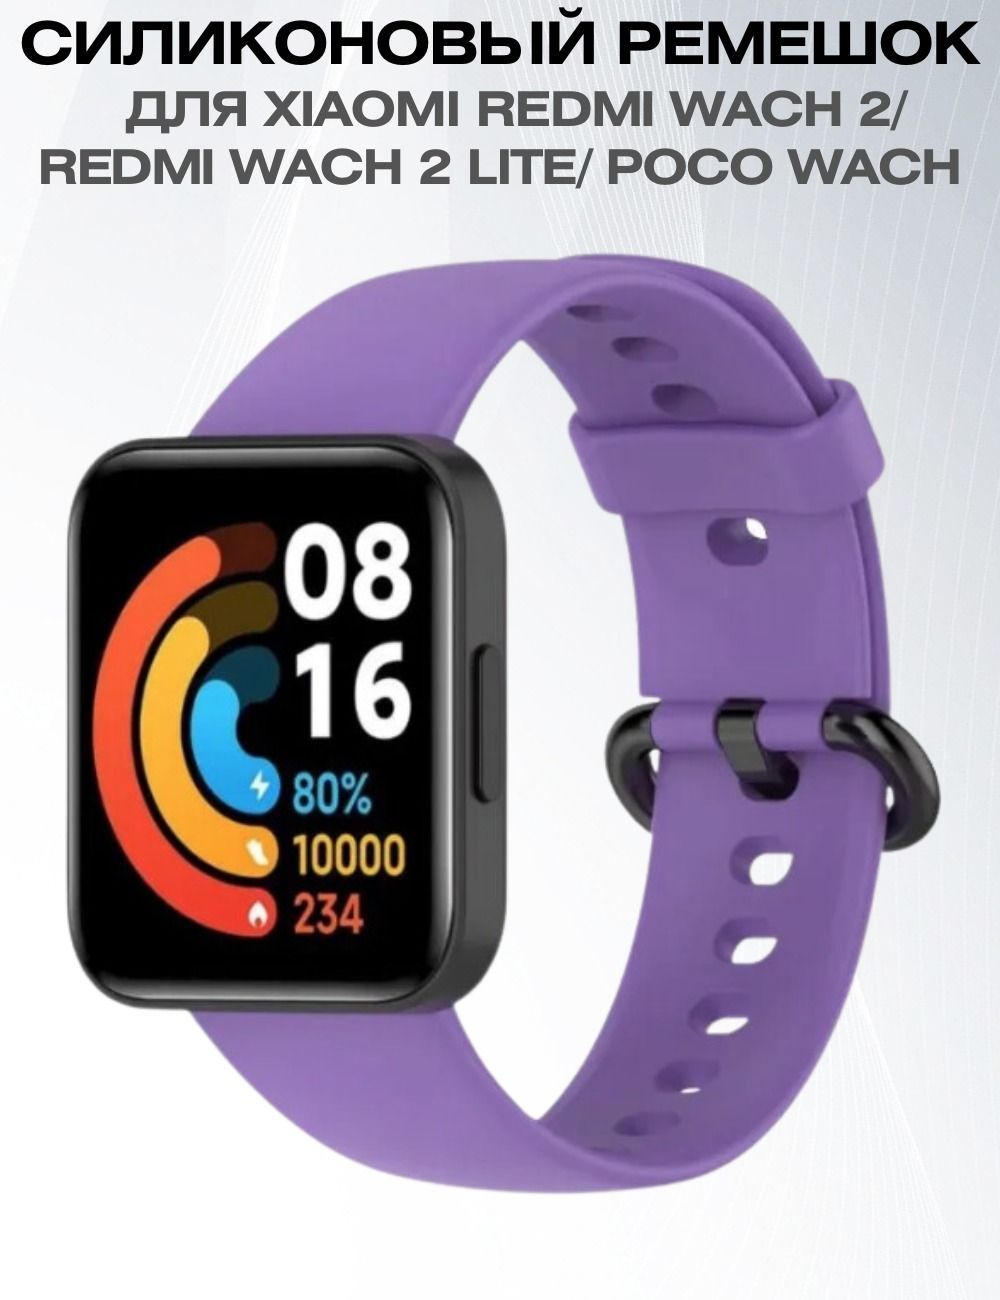 Часы redmi watch 4 отзывы